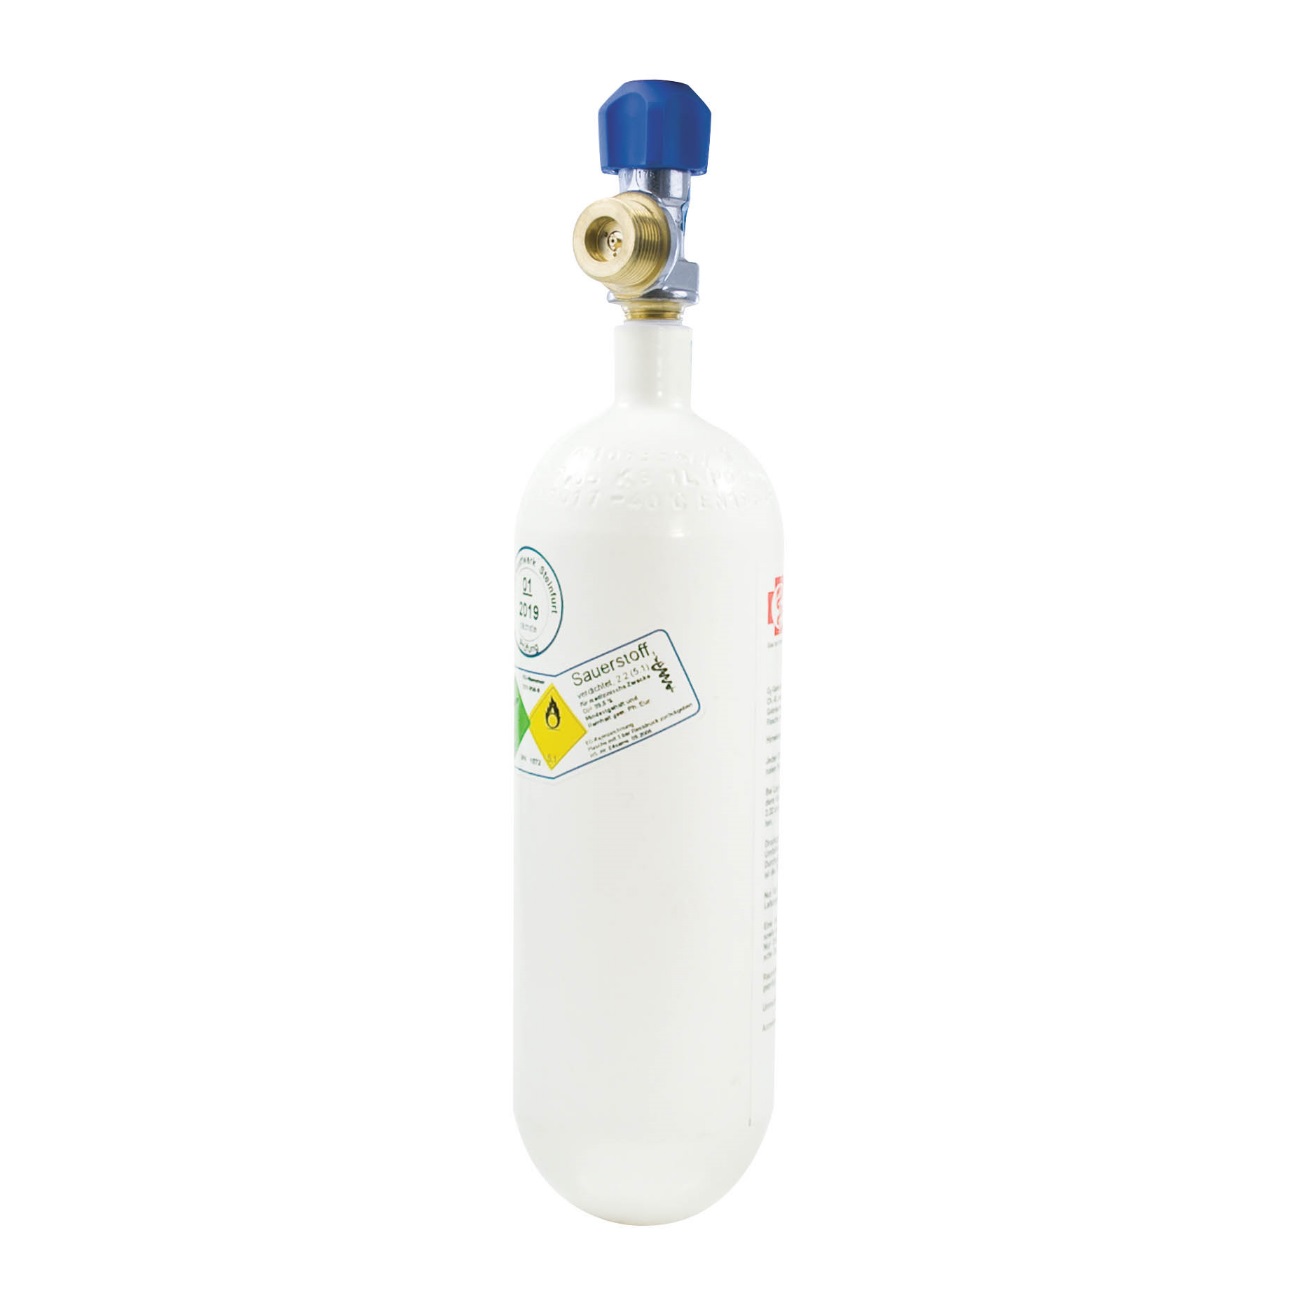 Sauerstoff-Flasche 1 Liter | Leichtstahl | gefüllt mit 200 bar medizinischem Sauerstoff